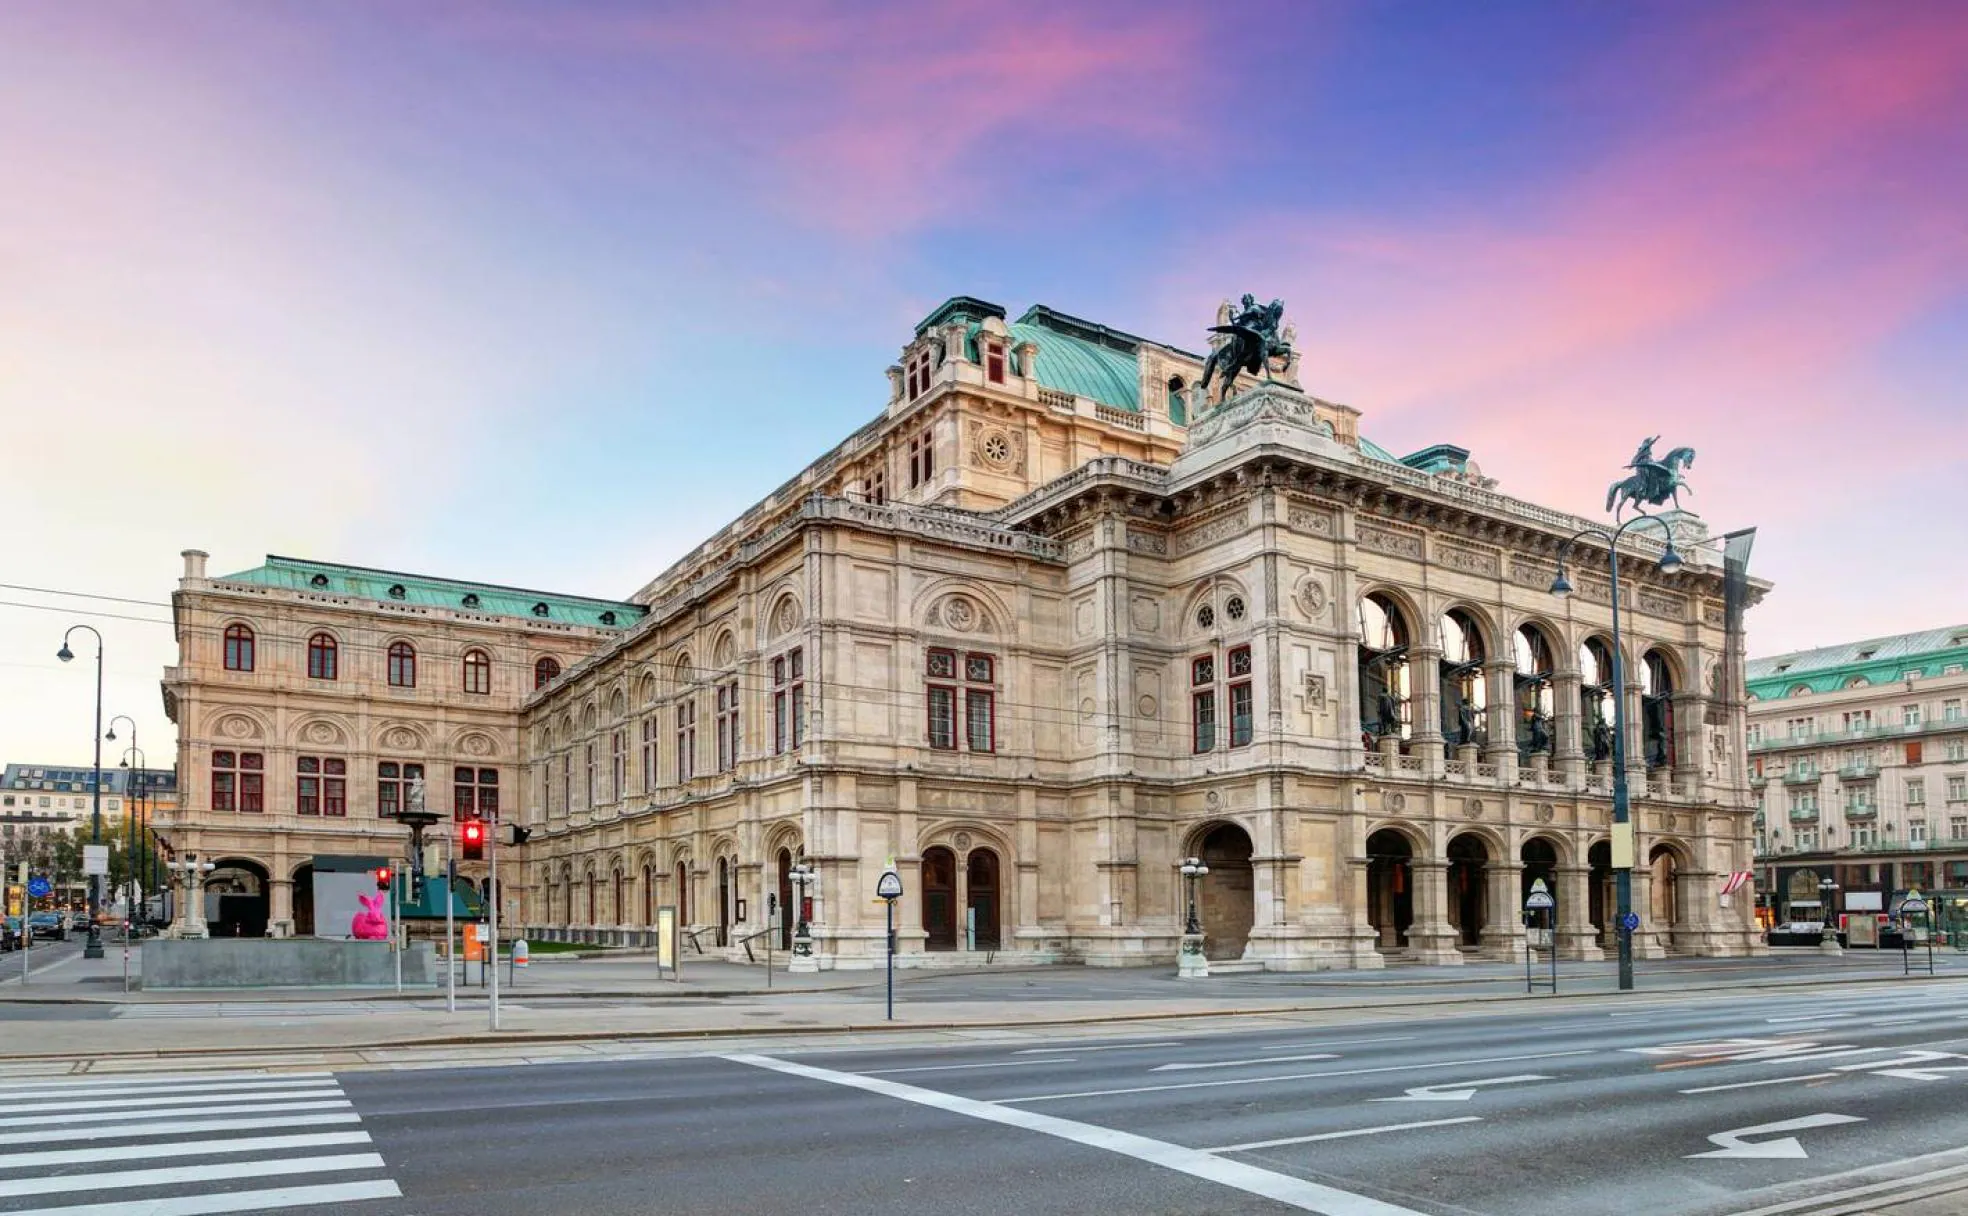 Vista general de la Ópera de Viena, uno de los edificio más visitado de la capital austriaca.